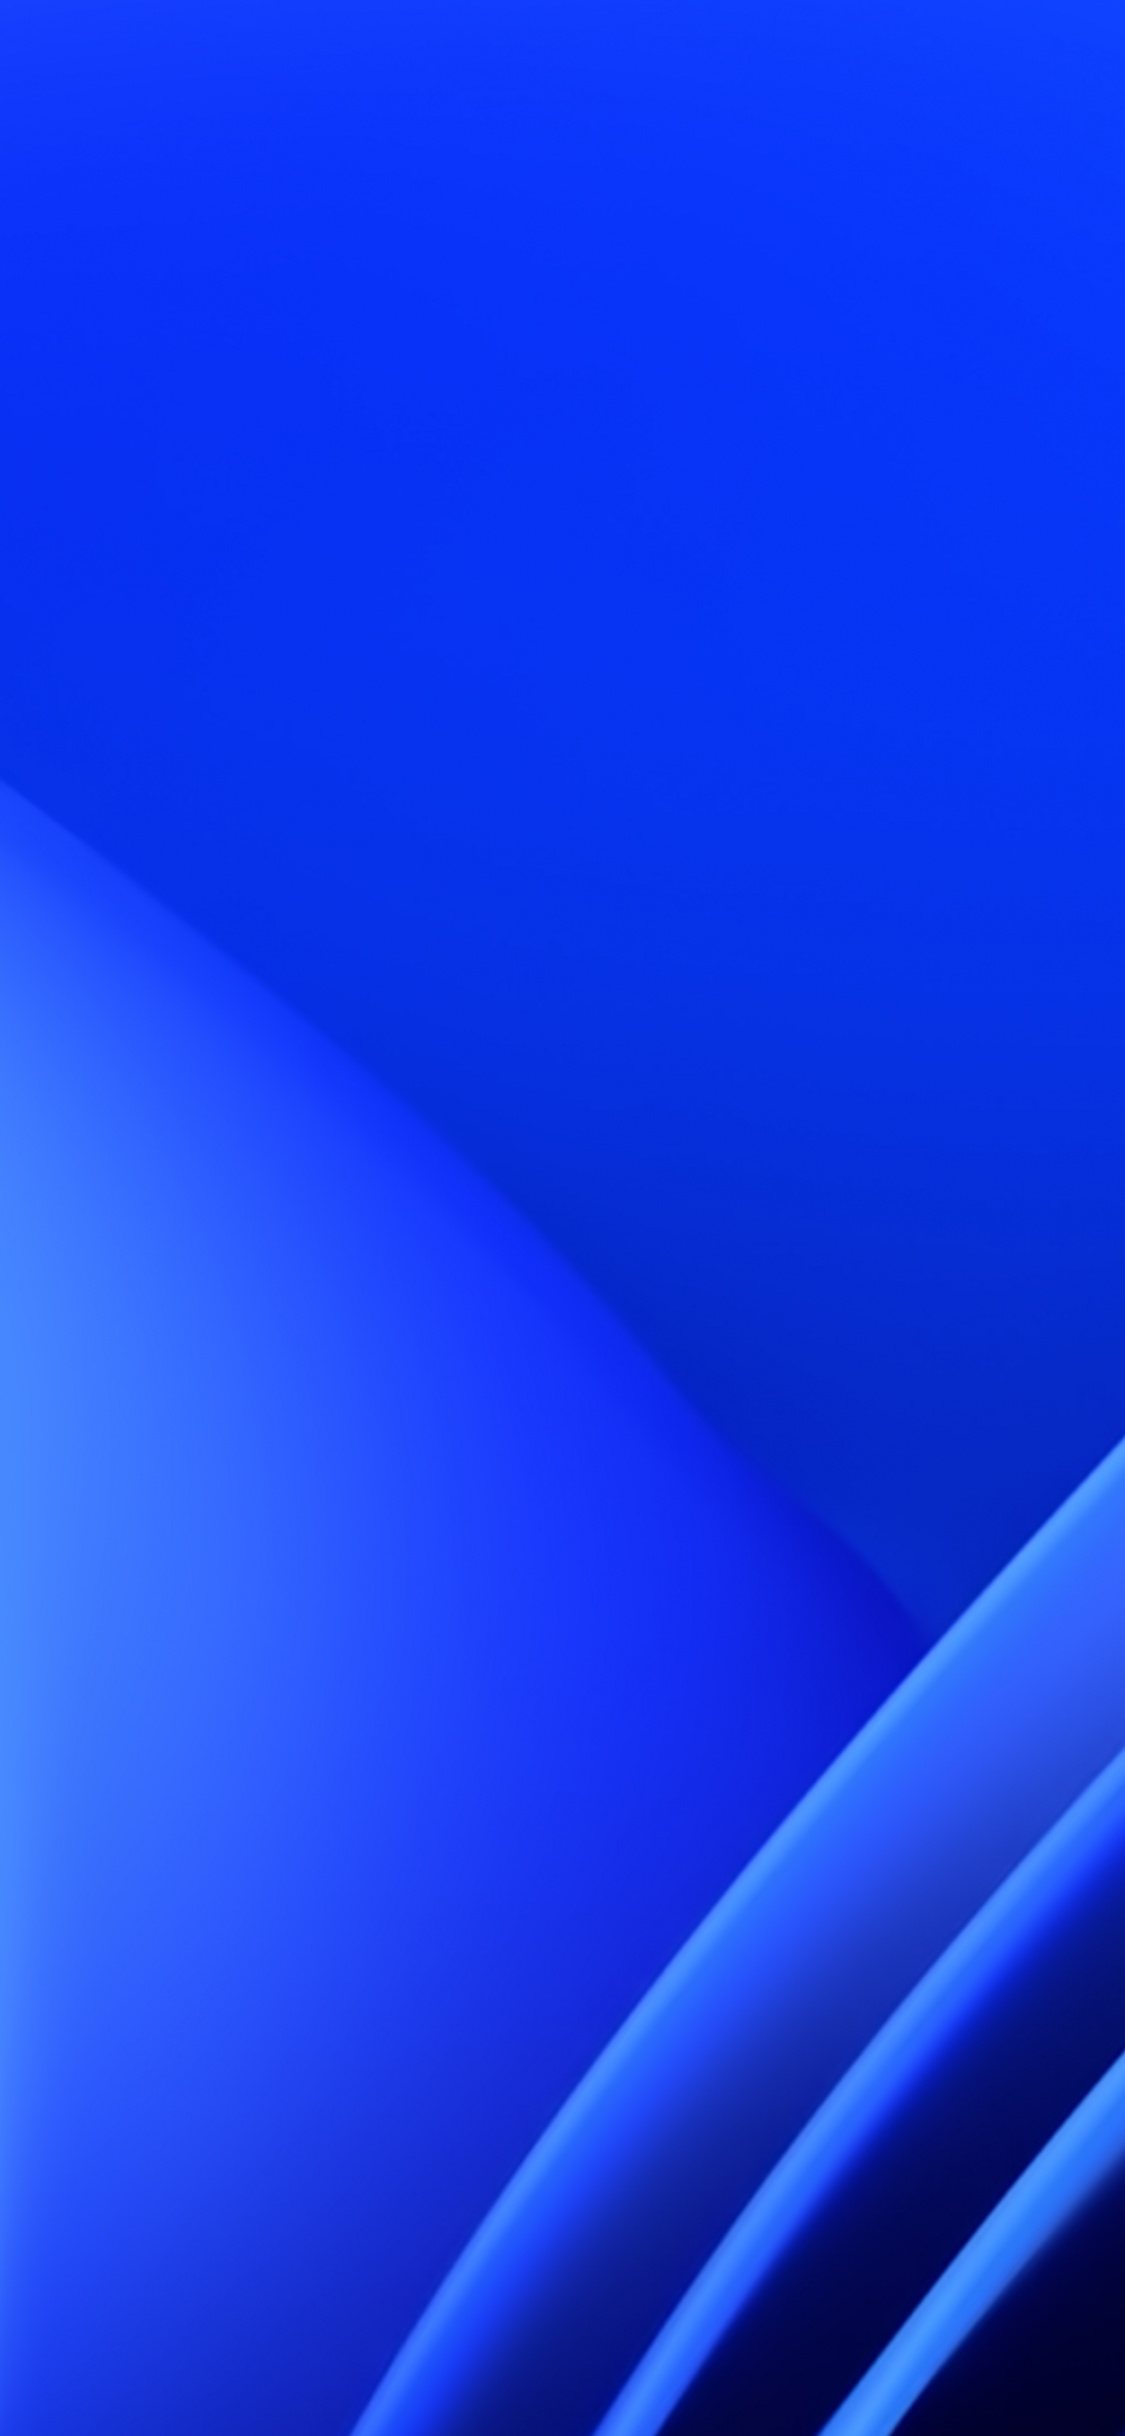 Hình nền Windows 11 4K màu xanh: Với màu xanh rực rỡ, hình ảnh này sẽ giúp máy tính của bạn trở nên độc đáo và thú vị hơn. Hình nền Windows 11 4K màu xanh với các chi tiết sắc nét sẽ khiến bạn phải trầm trồ ngắm nhìn.